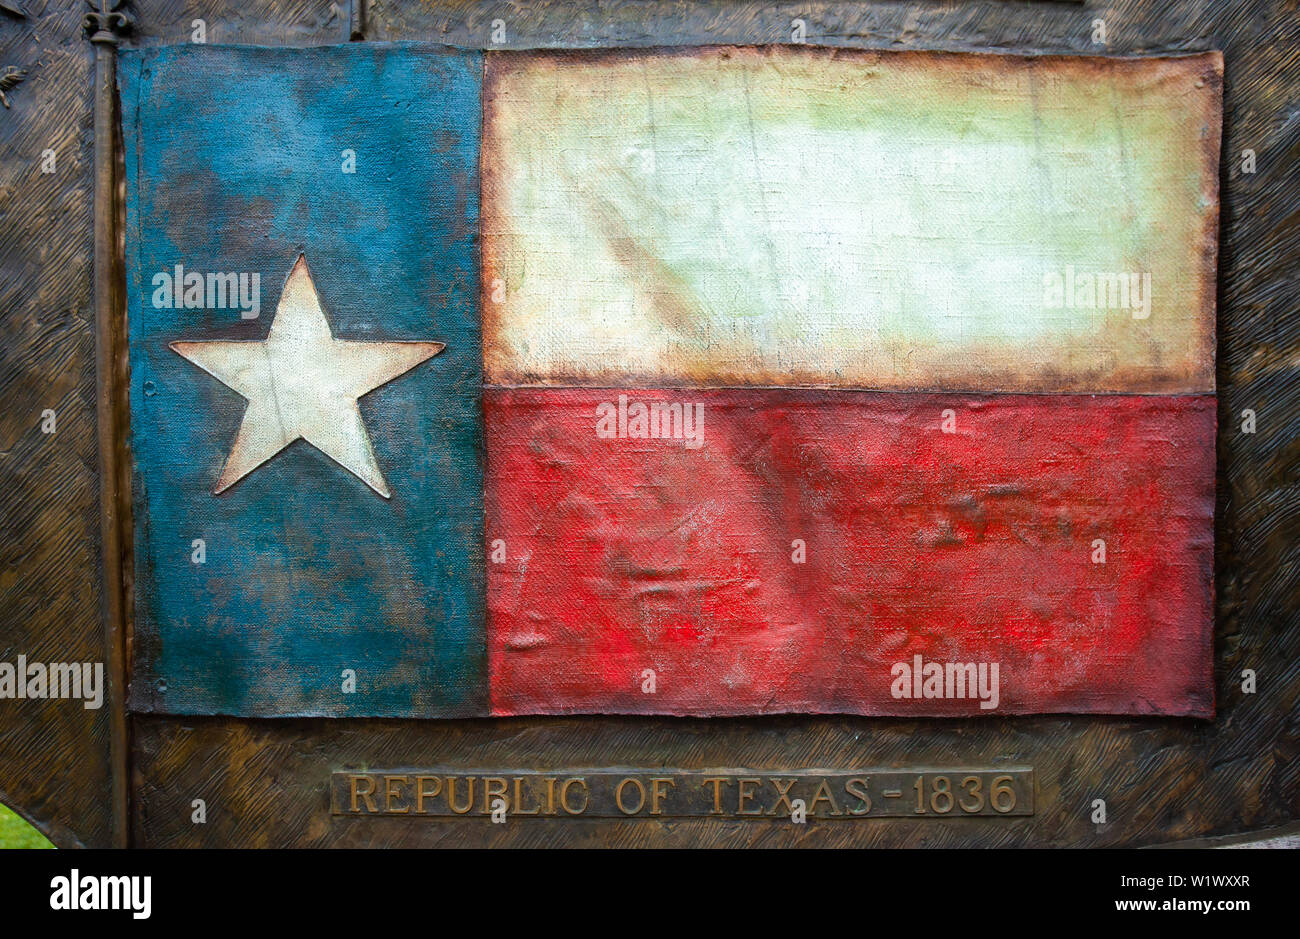 Flagge von Texas am Memorial Plate mit Datum von 1836, als Texas erklärte idependence aus Mexiko Stockfoto